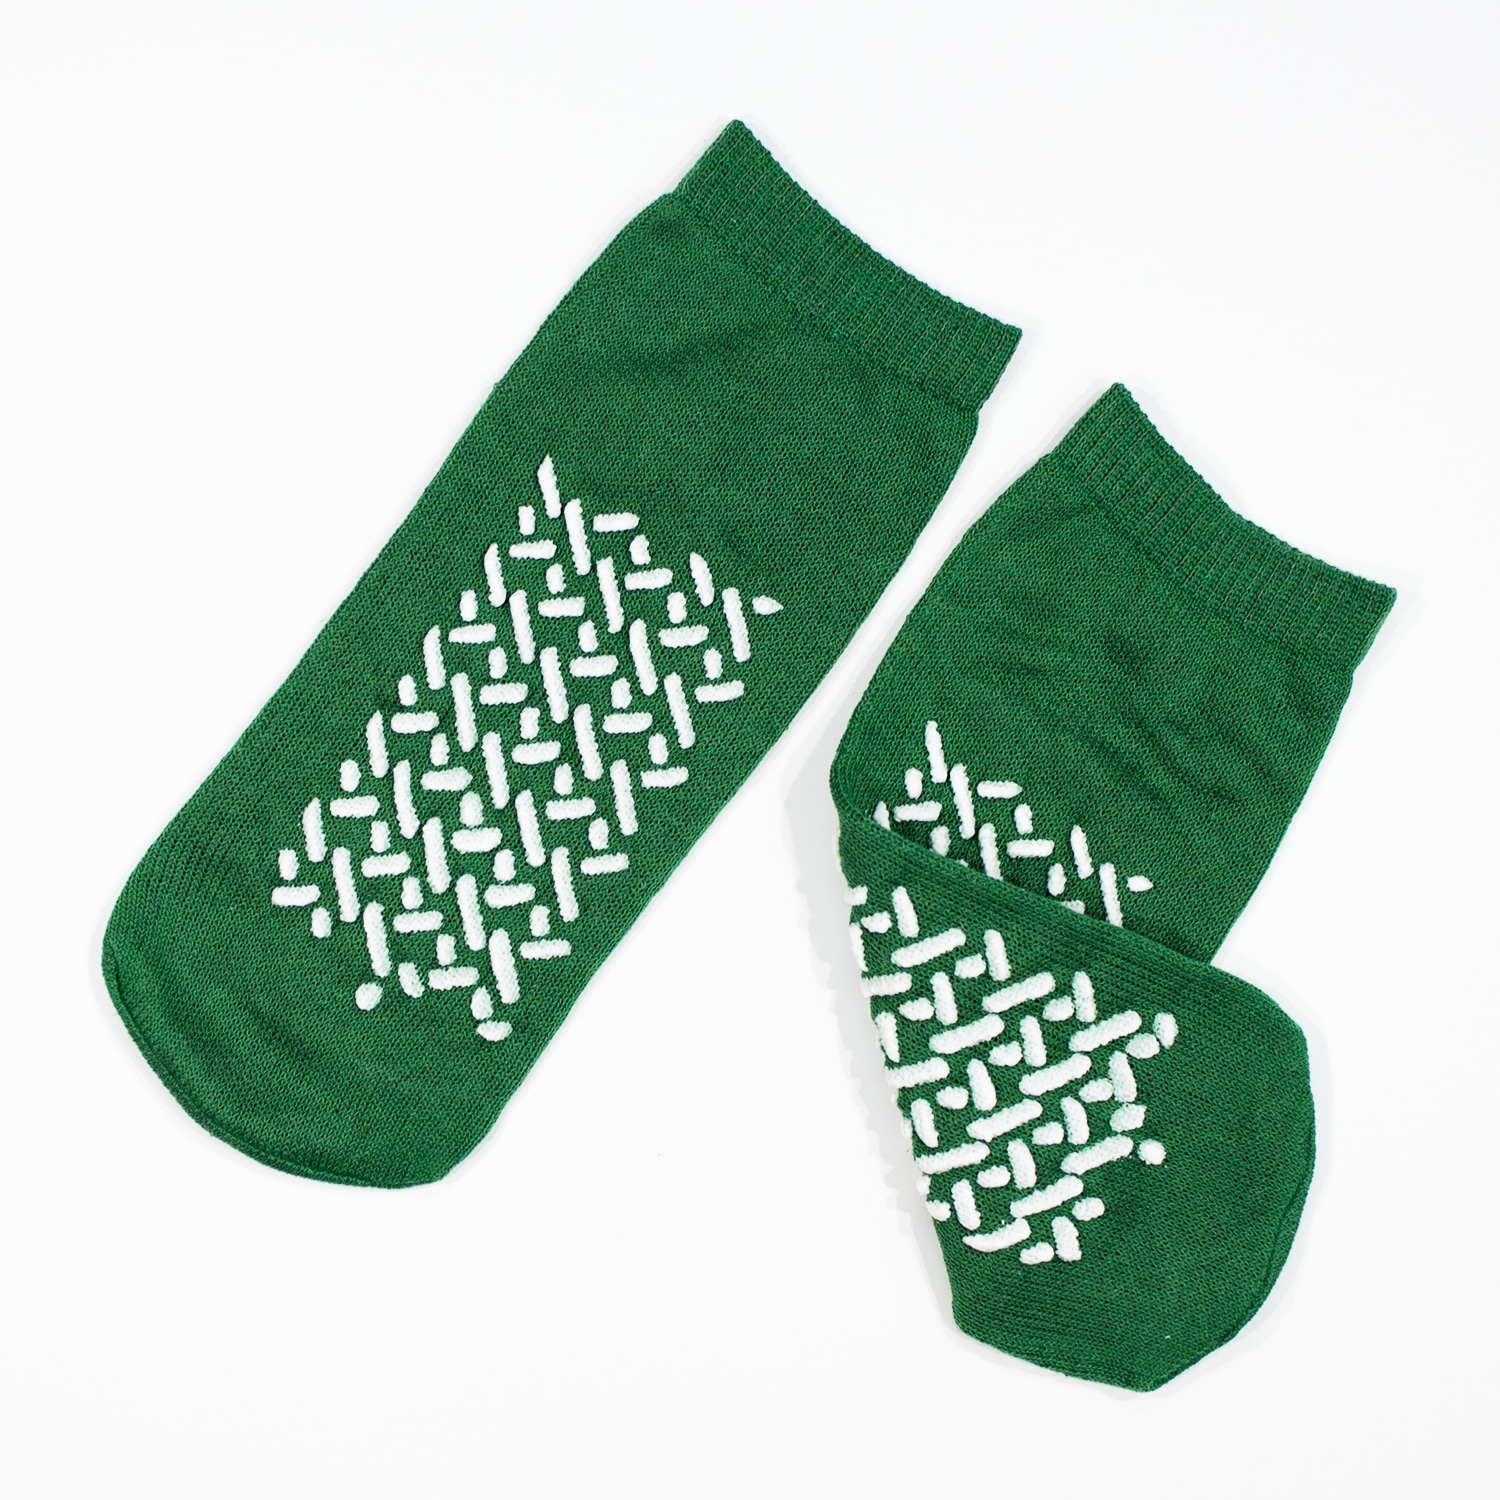 Double Sided Slipper Socks, Non Skid Hospital Travel Slipper Socks M, Green  #2191 - BM Global Supply Corporation